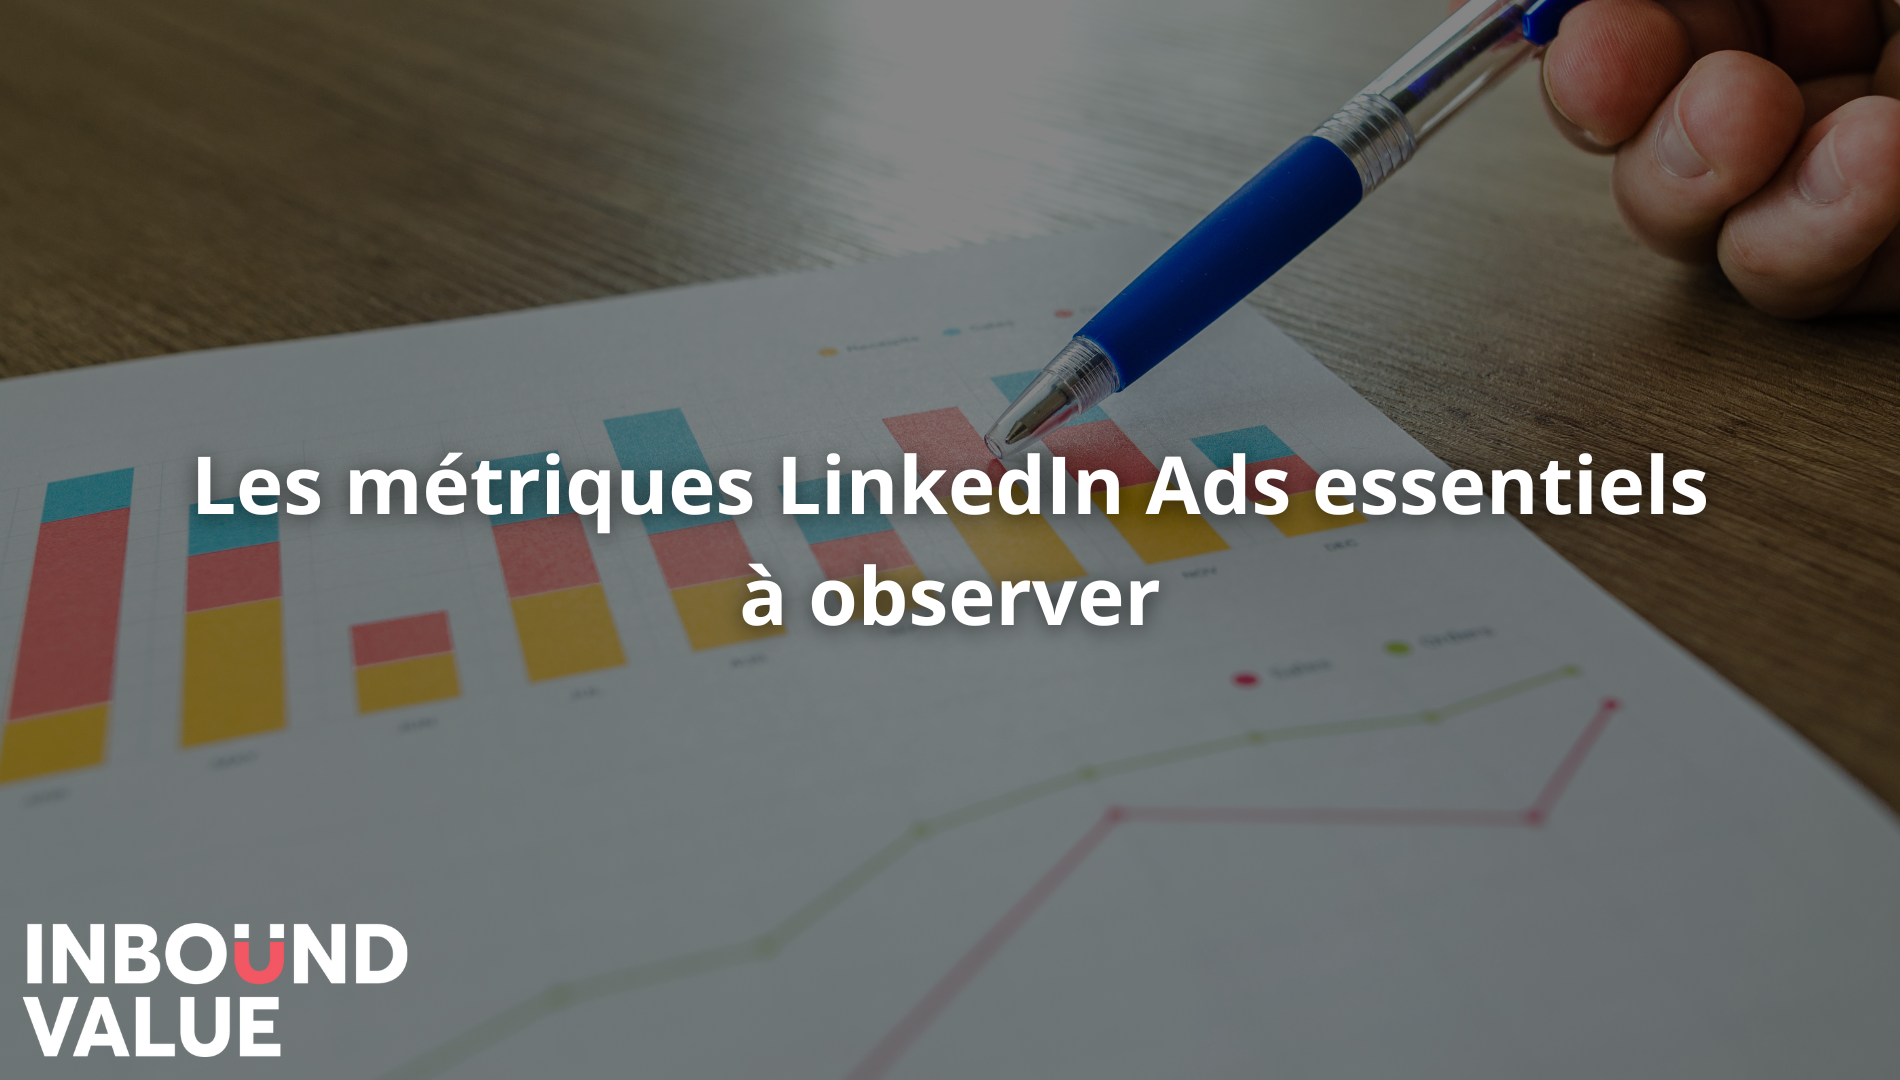 Les métriques LinkedIn Ads essentiels à observer (1) (1)